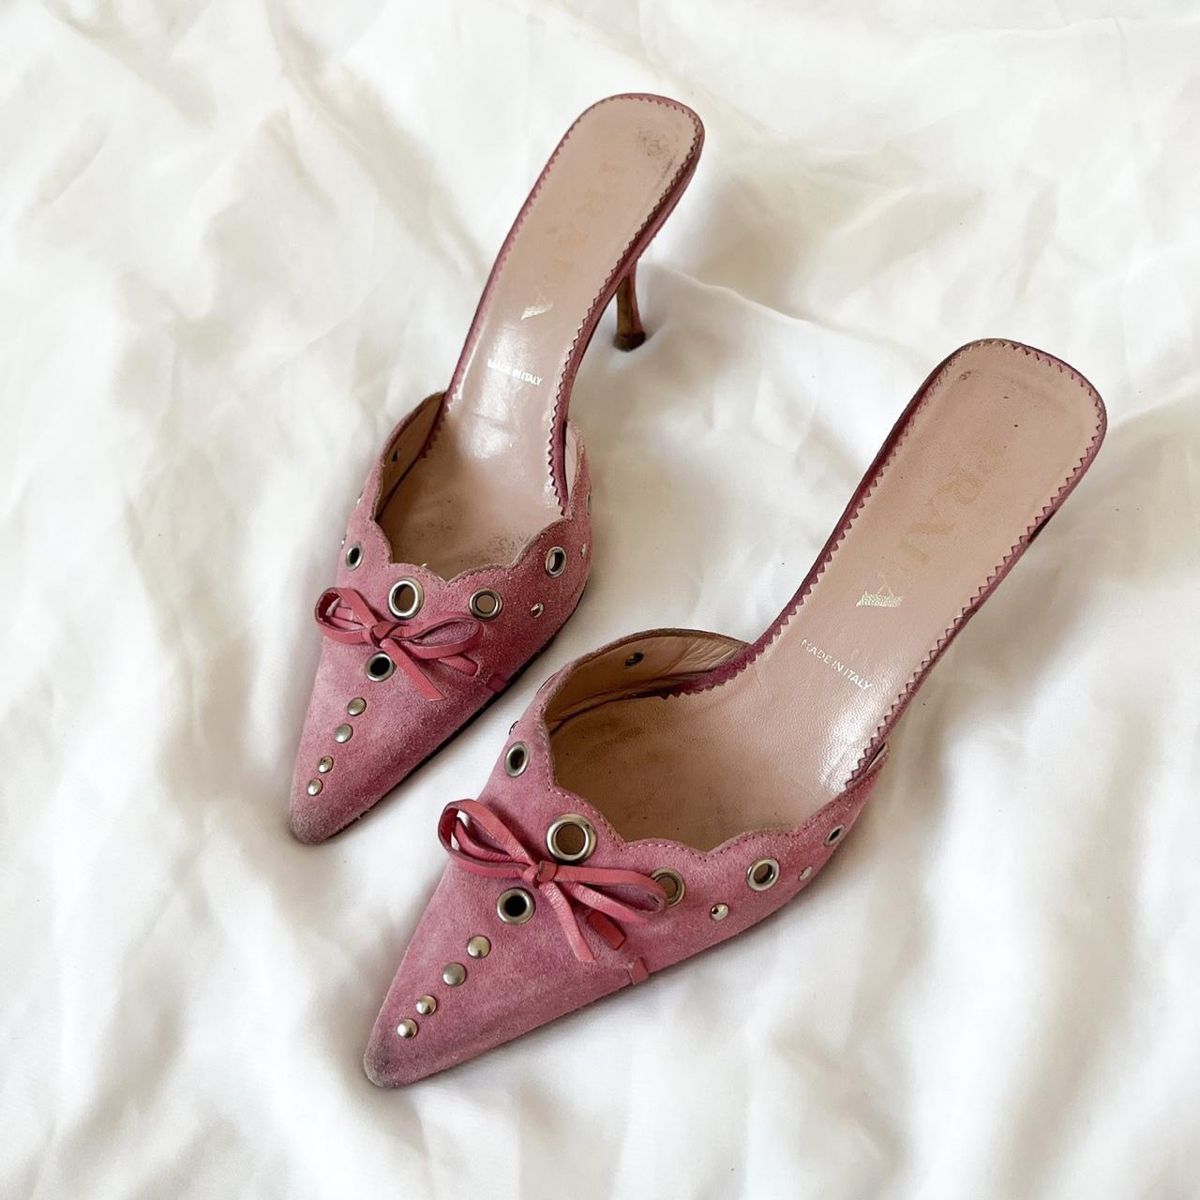 Trendy and stunning kitten heels